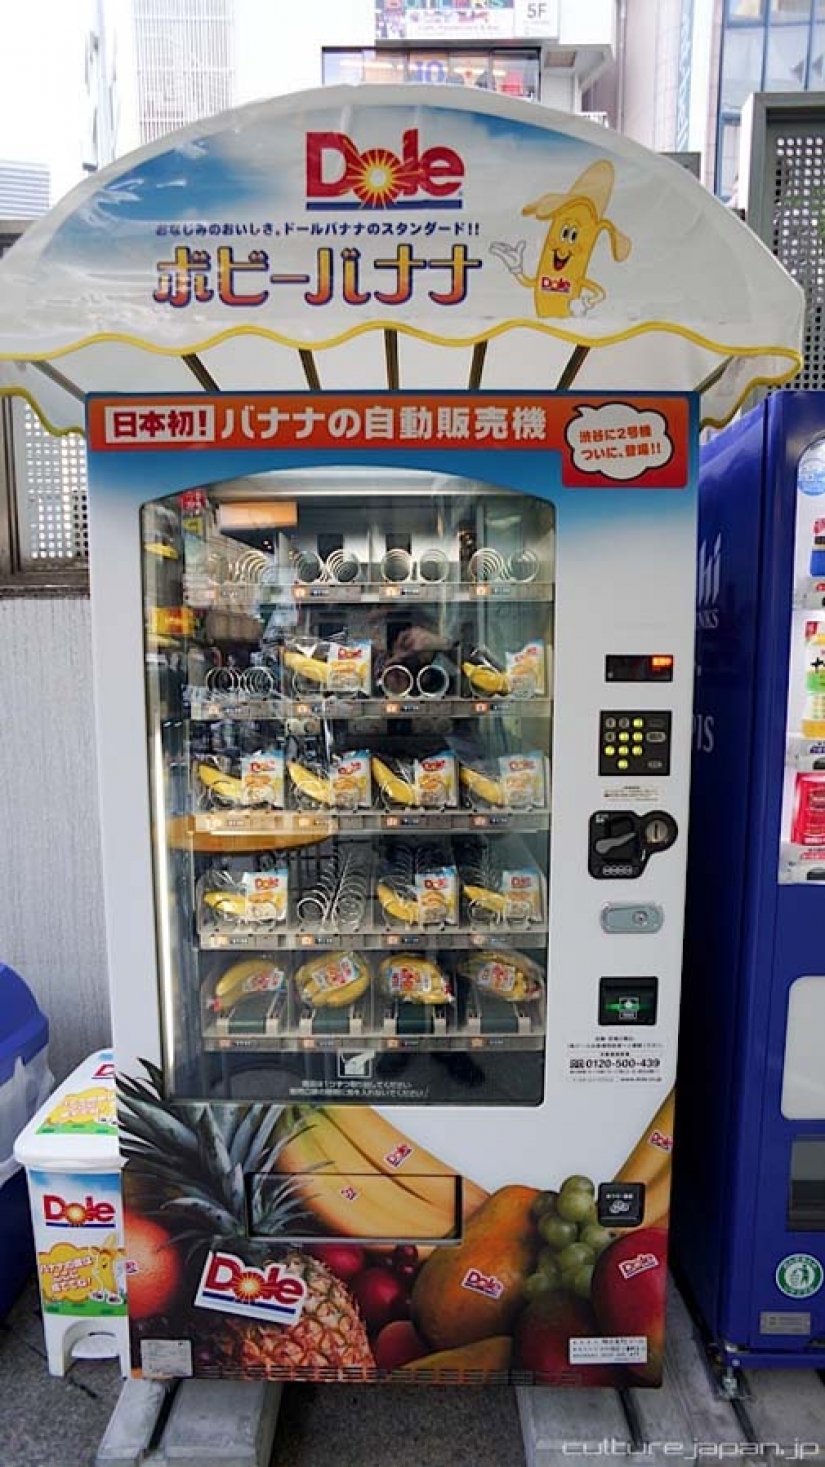 Máquinas expendedoras en Japón